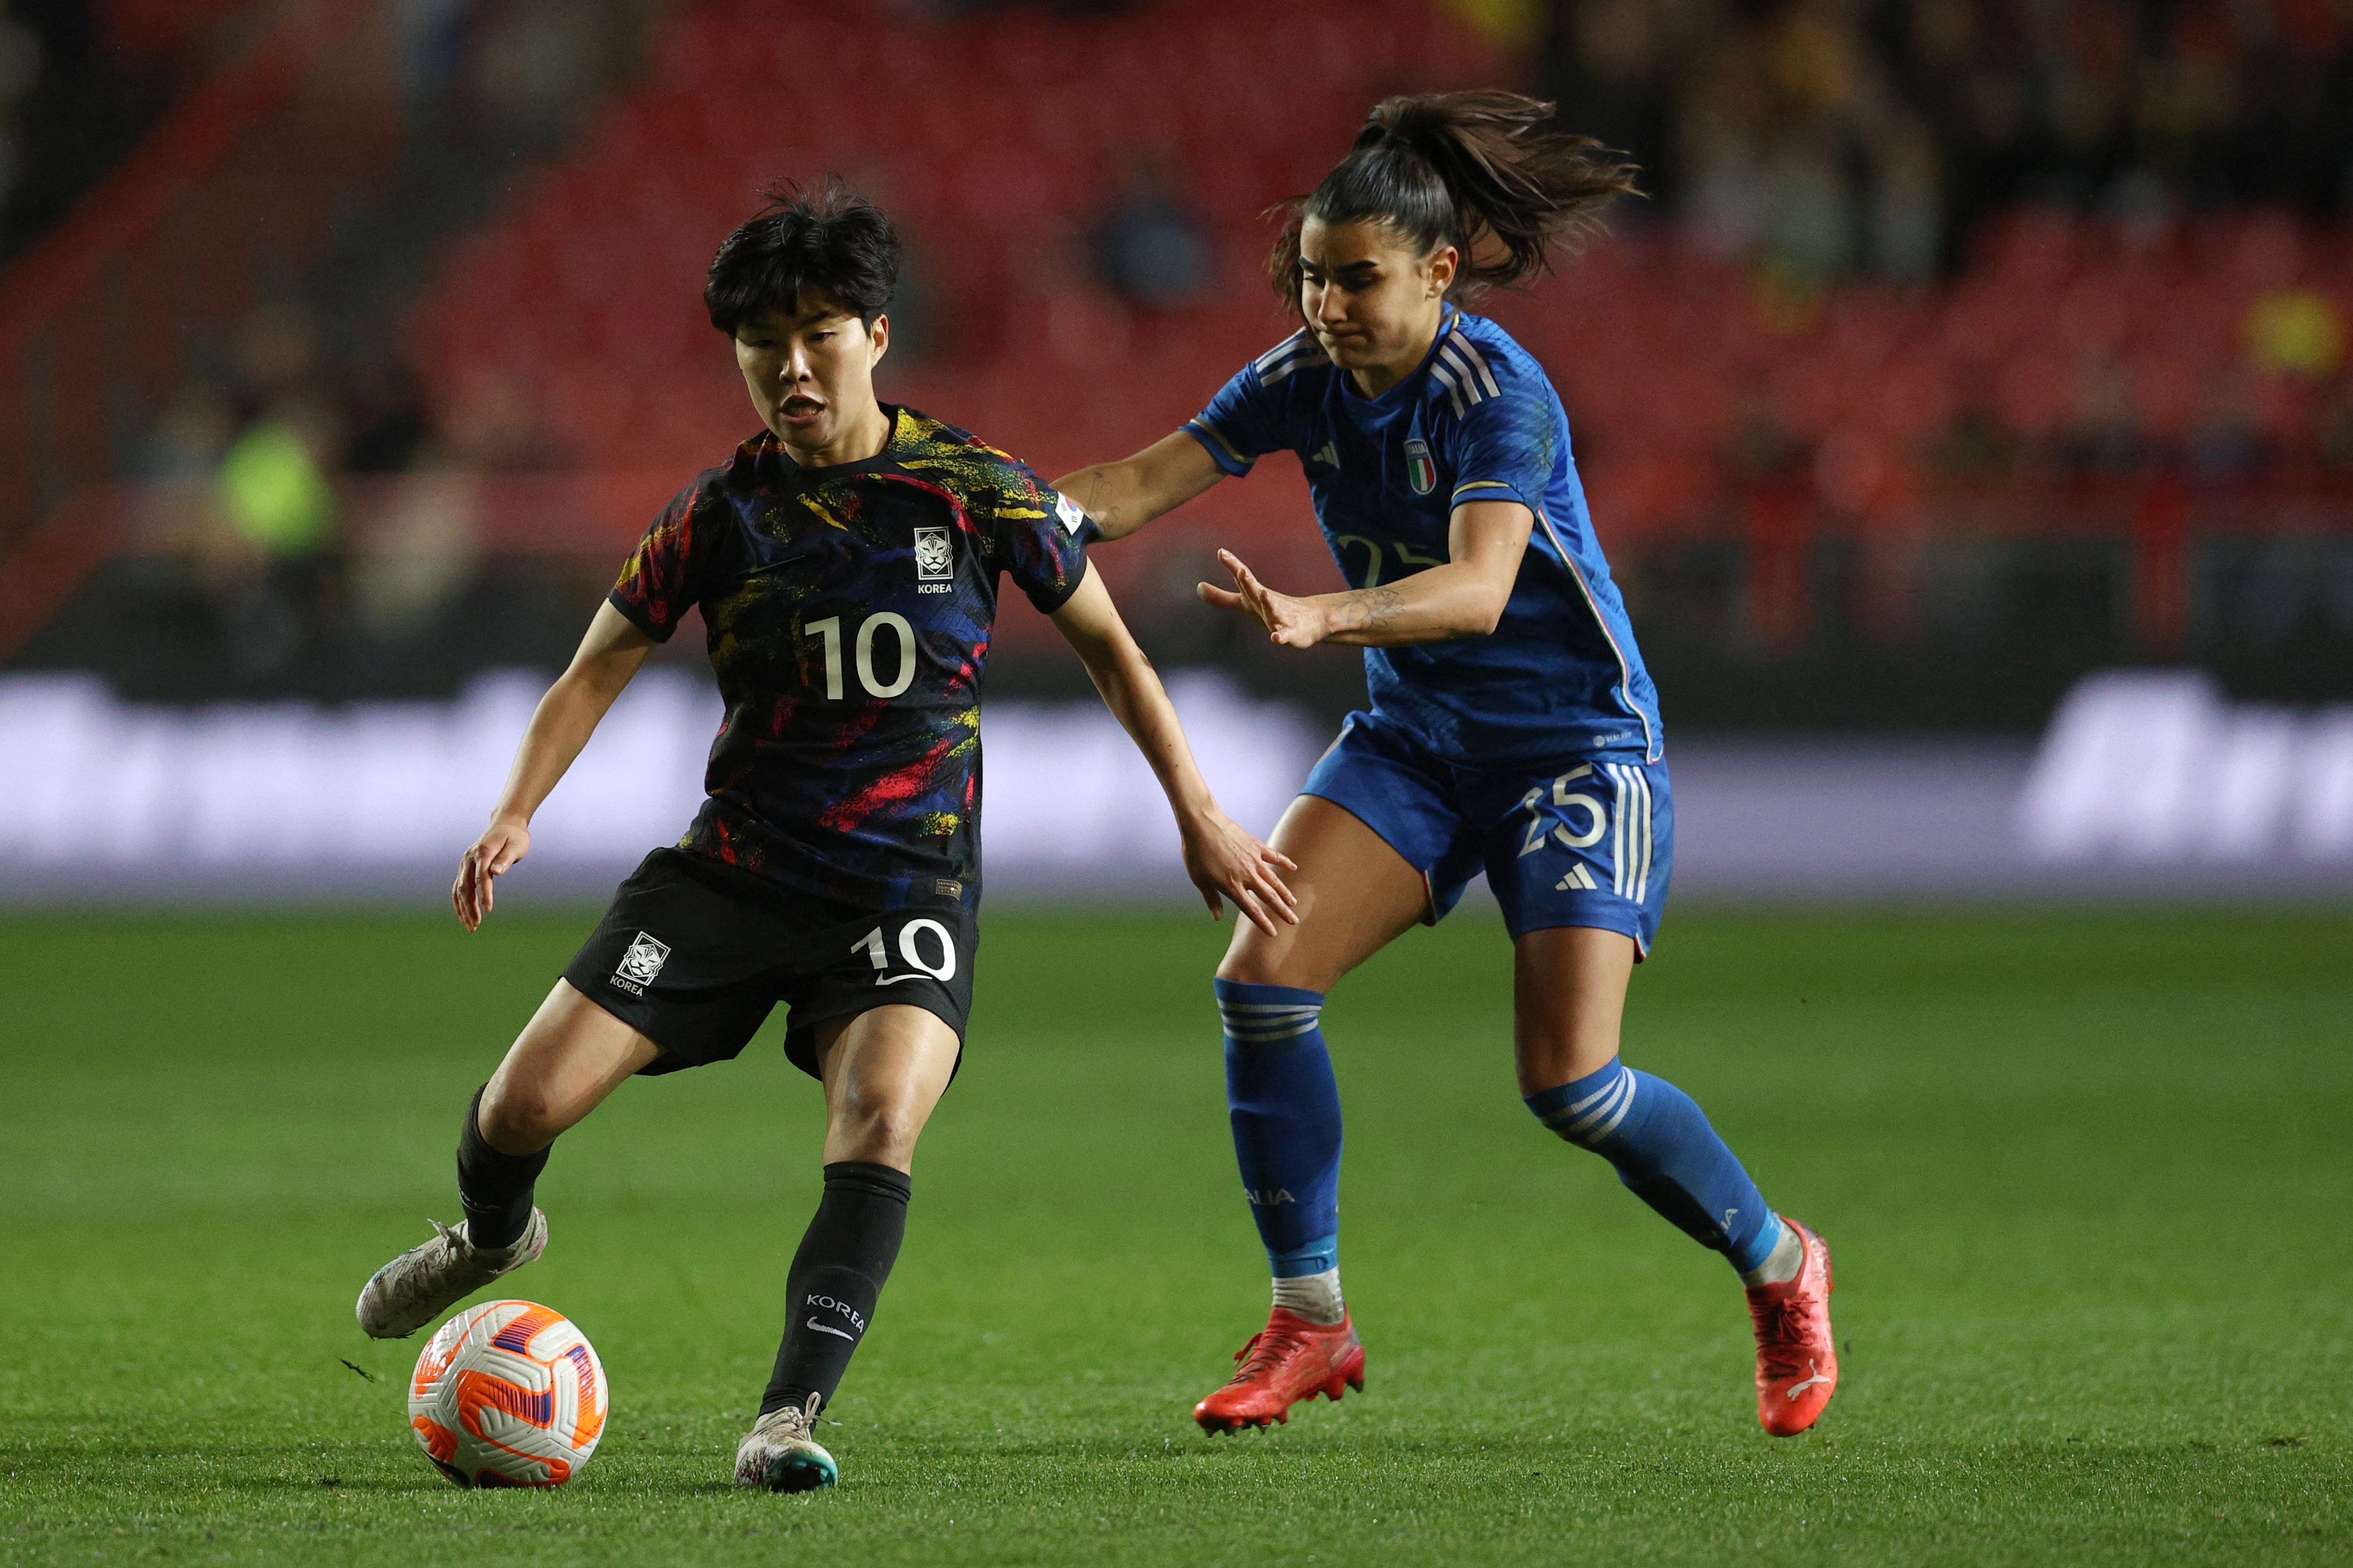 한국 여자축구 대표팀의 지소연이 23일(한국시간) 영국에서 열린 아널드클라크컵 3차전에서 이탈리아 수비수의 견제를 받으며 패스하고 있다. AFP 연합뉴스